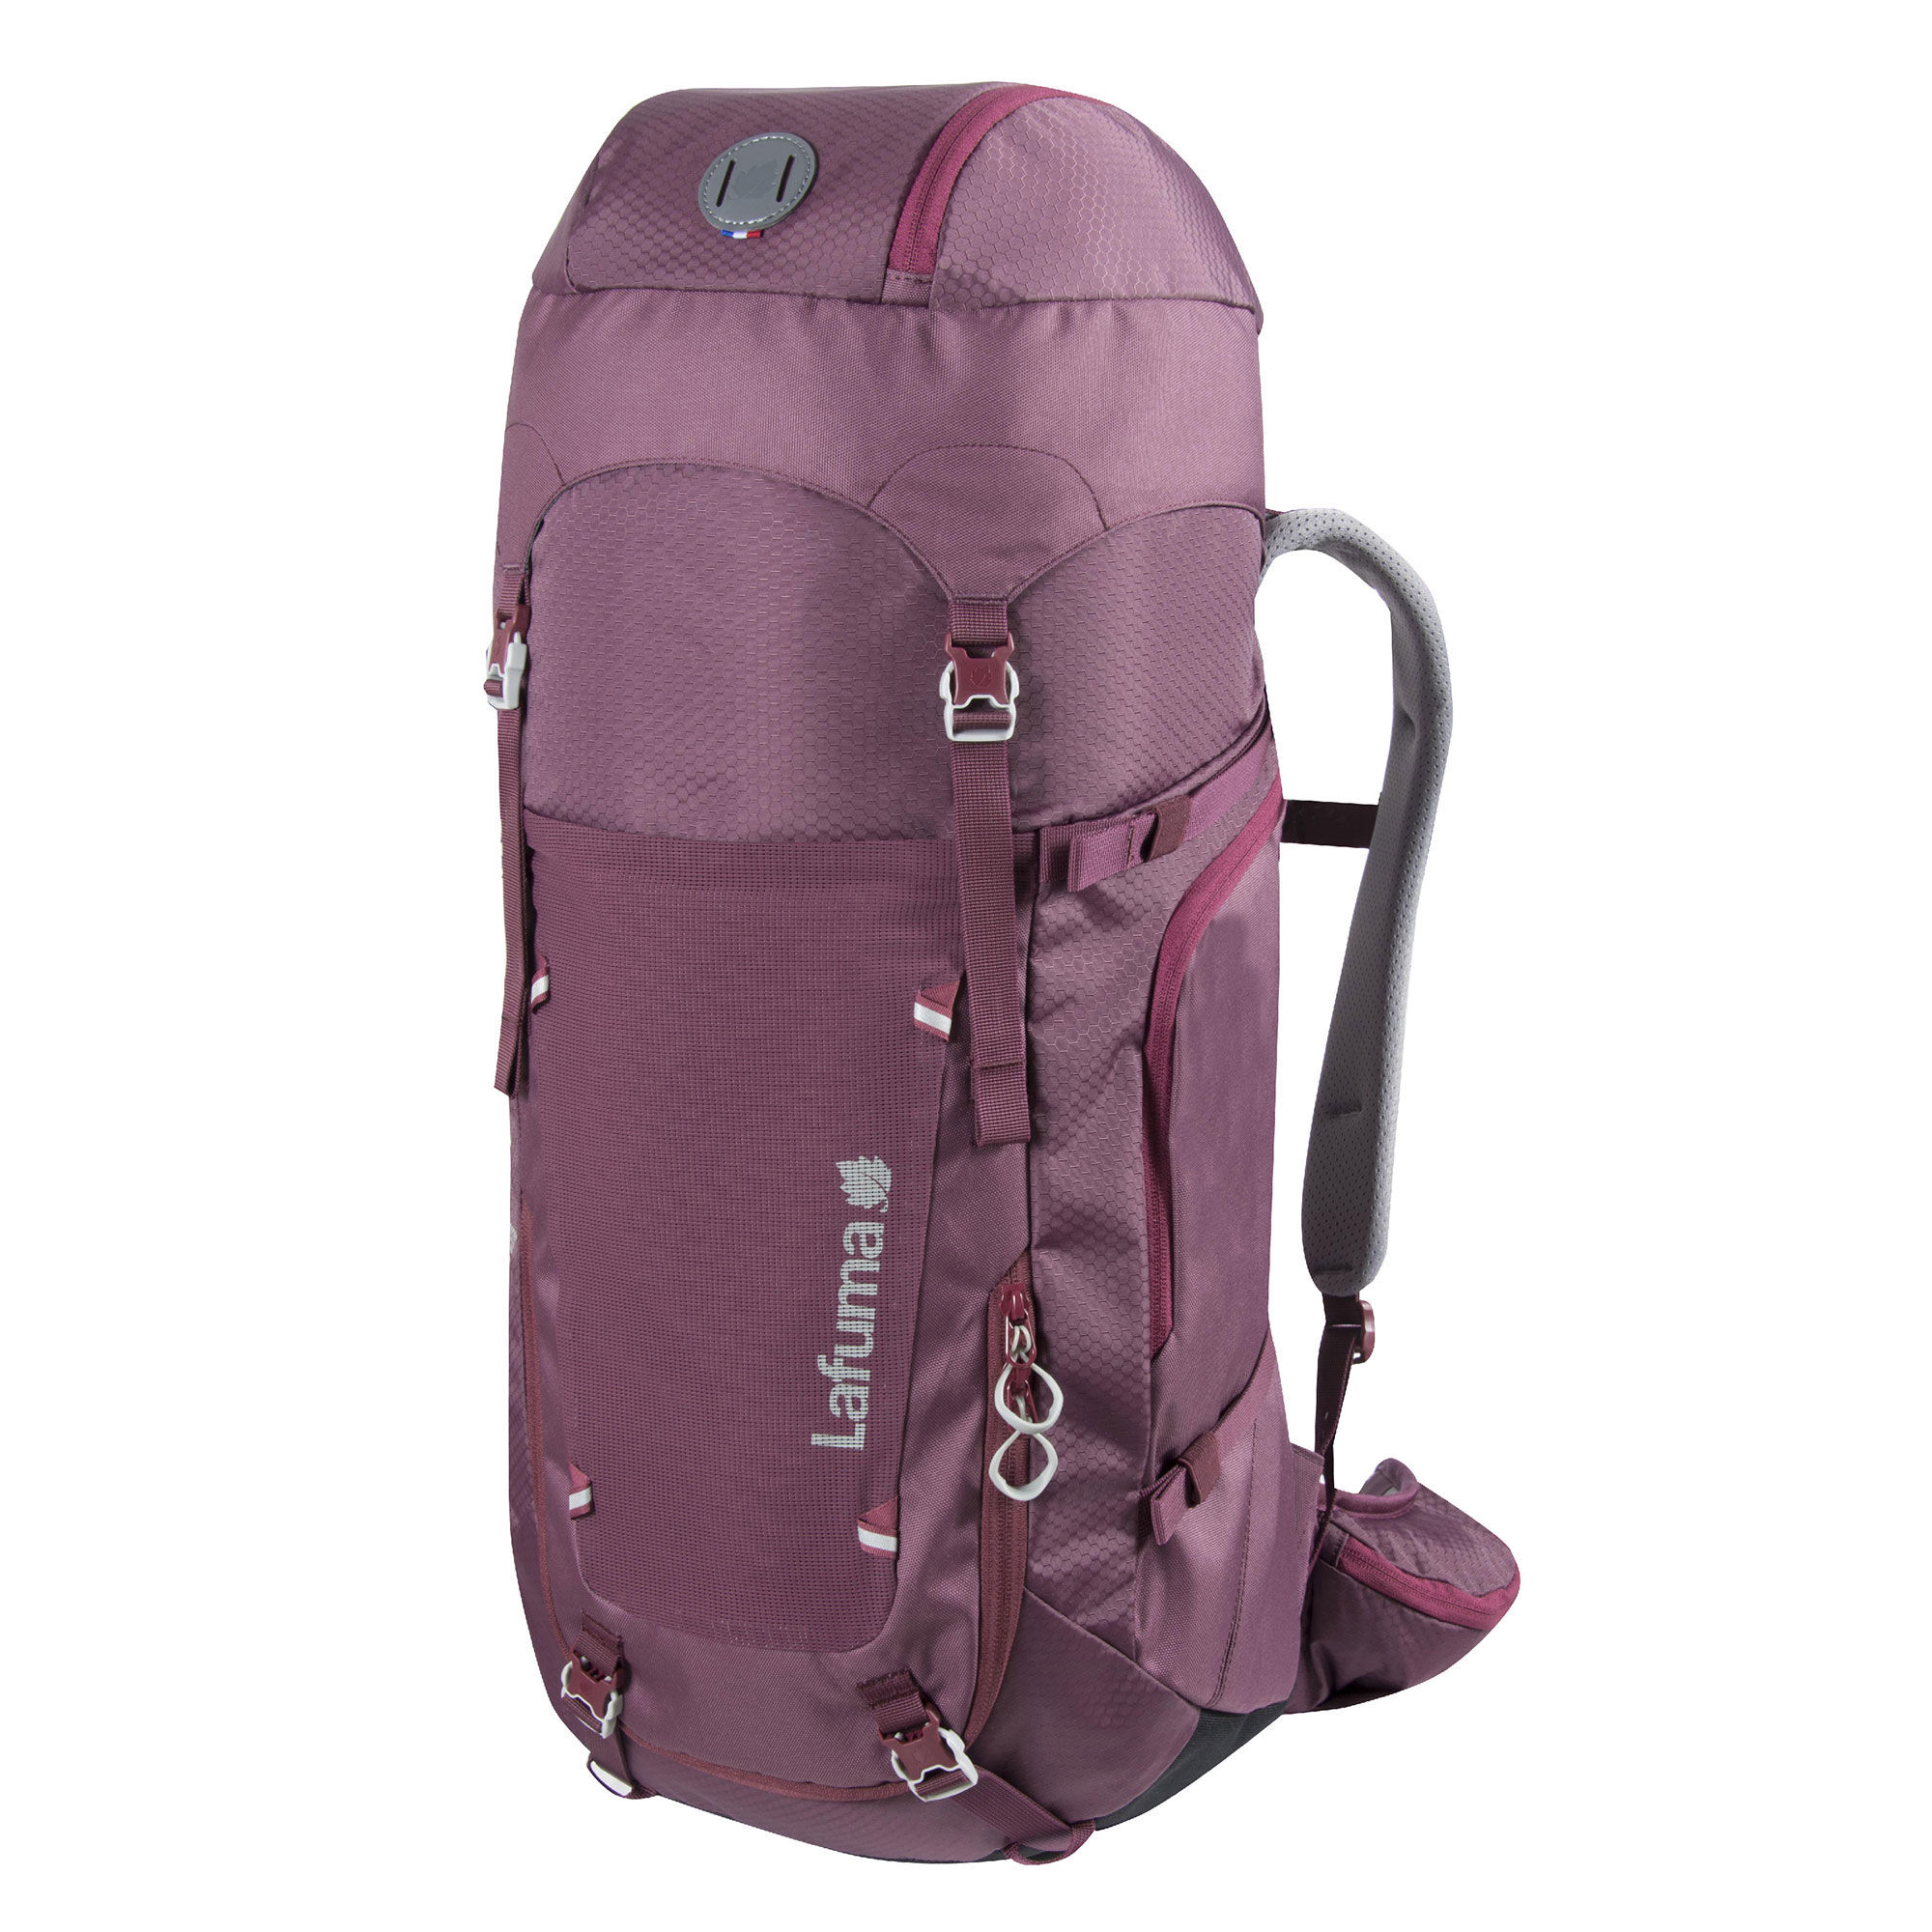 Lafuma - Access 40 LD - Trekking backpack - Women's